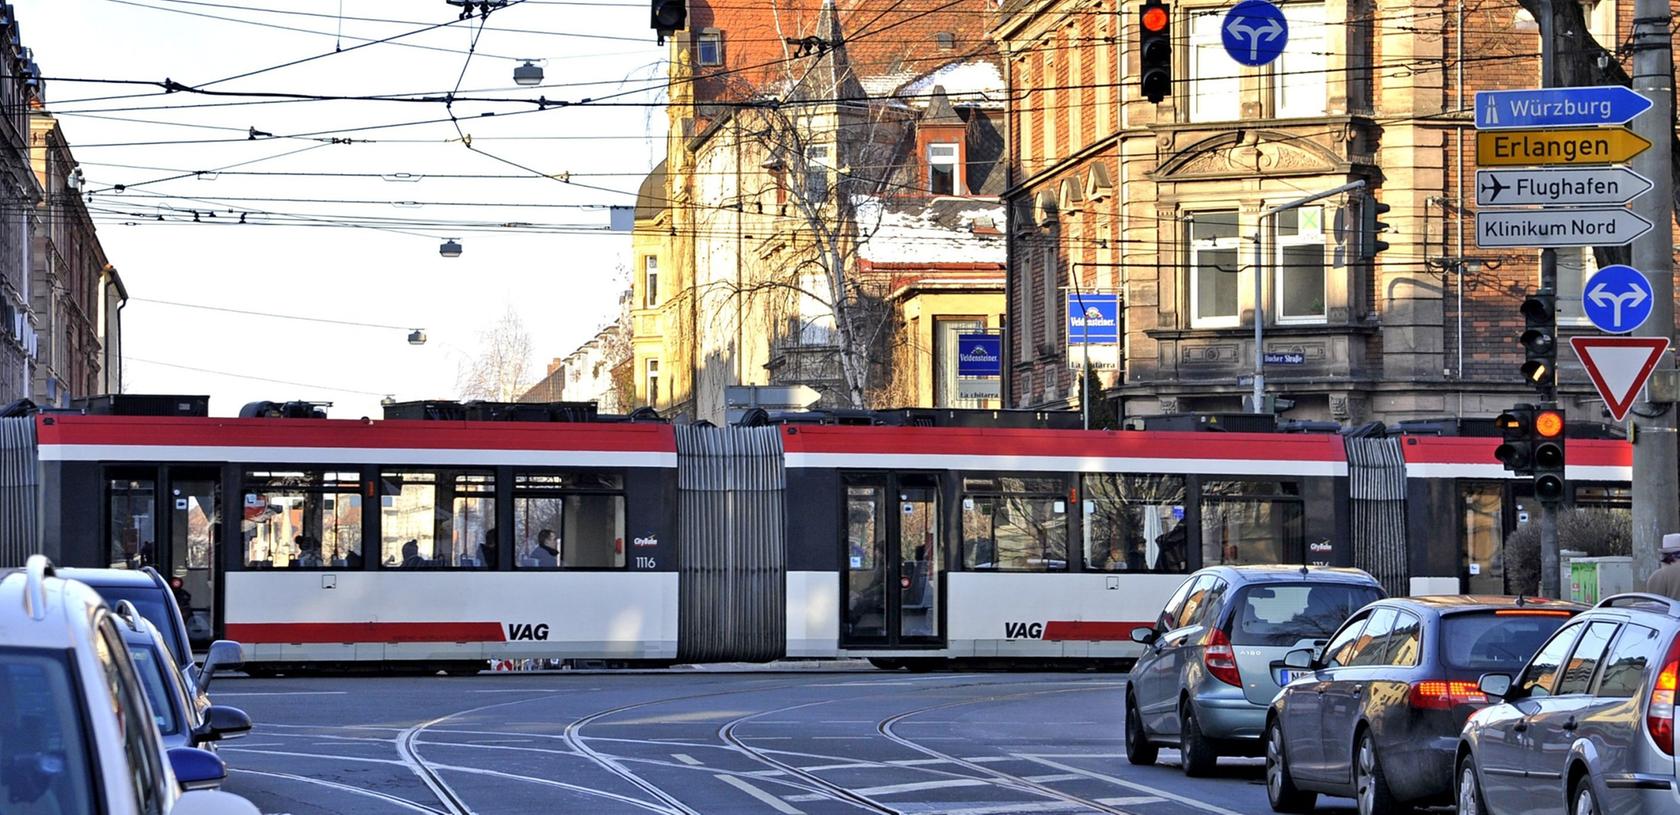 Ob die Straßenbahn bald durch die Altstadt fährt, ist noch nicht entschieden. Der Verkehrsclub Deutschland bringt nun schon einmal eine Infobroschüre heraus.